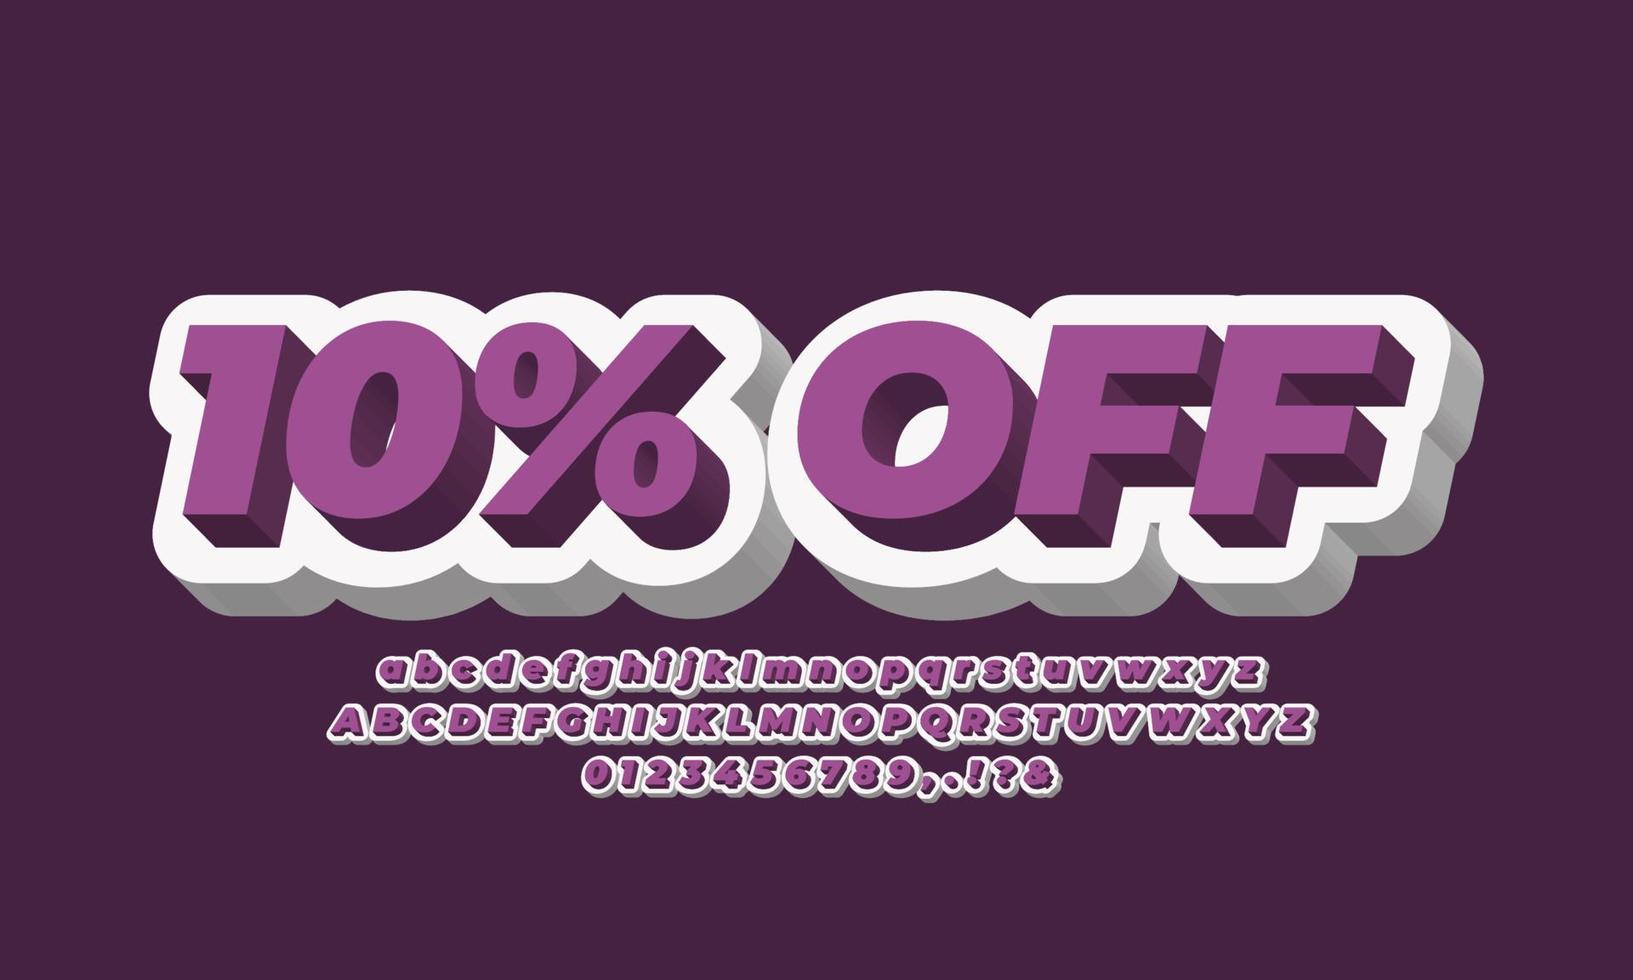 10 percent ten percent Sale discount promotion 3d purple  white vector